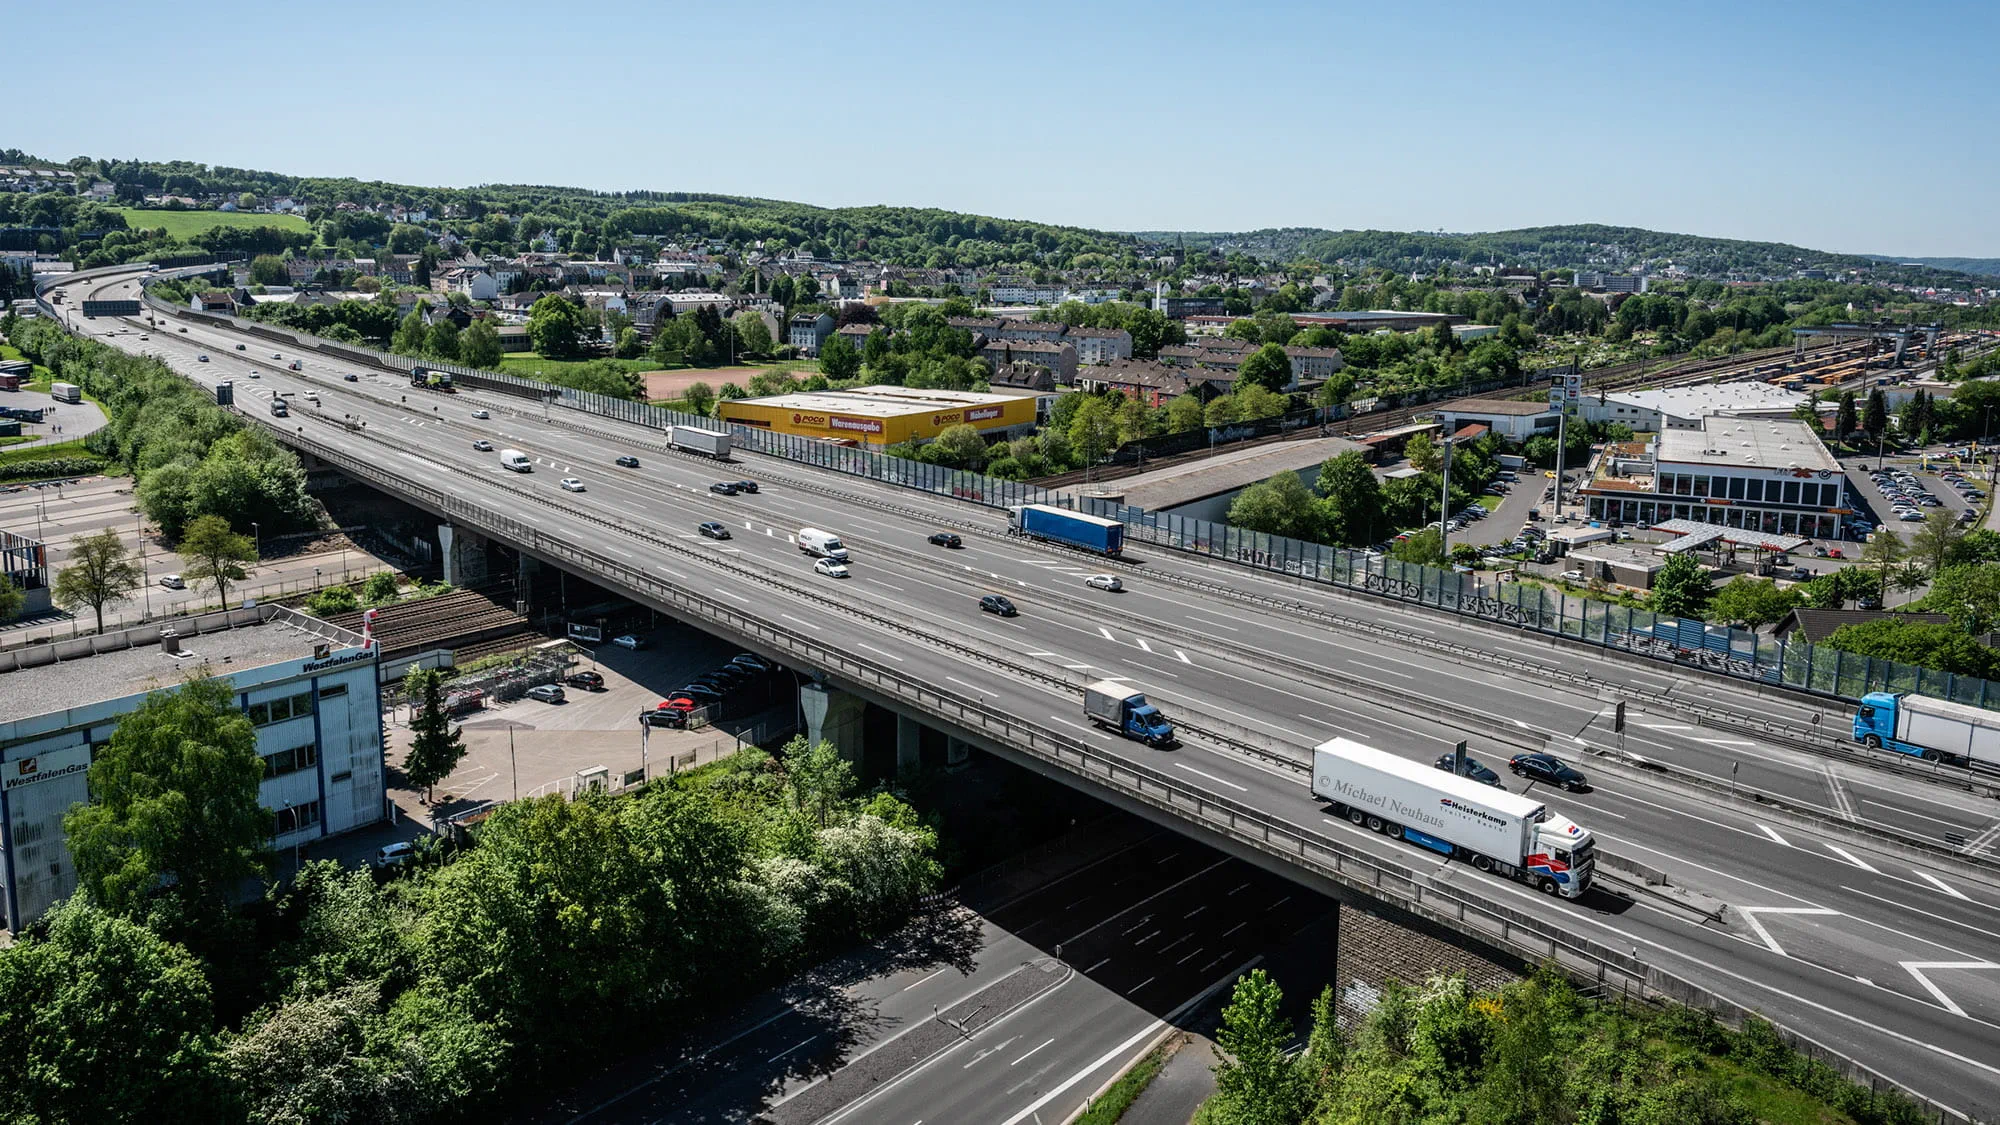 Die 6-spurige Schwelmetalbrücke ist Teil der A1, einer der meistbefahrenen Autobahnen Deutschlands und soll ersetzt werden ohne den Verkehrsfluss zu behindern. 